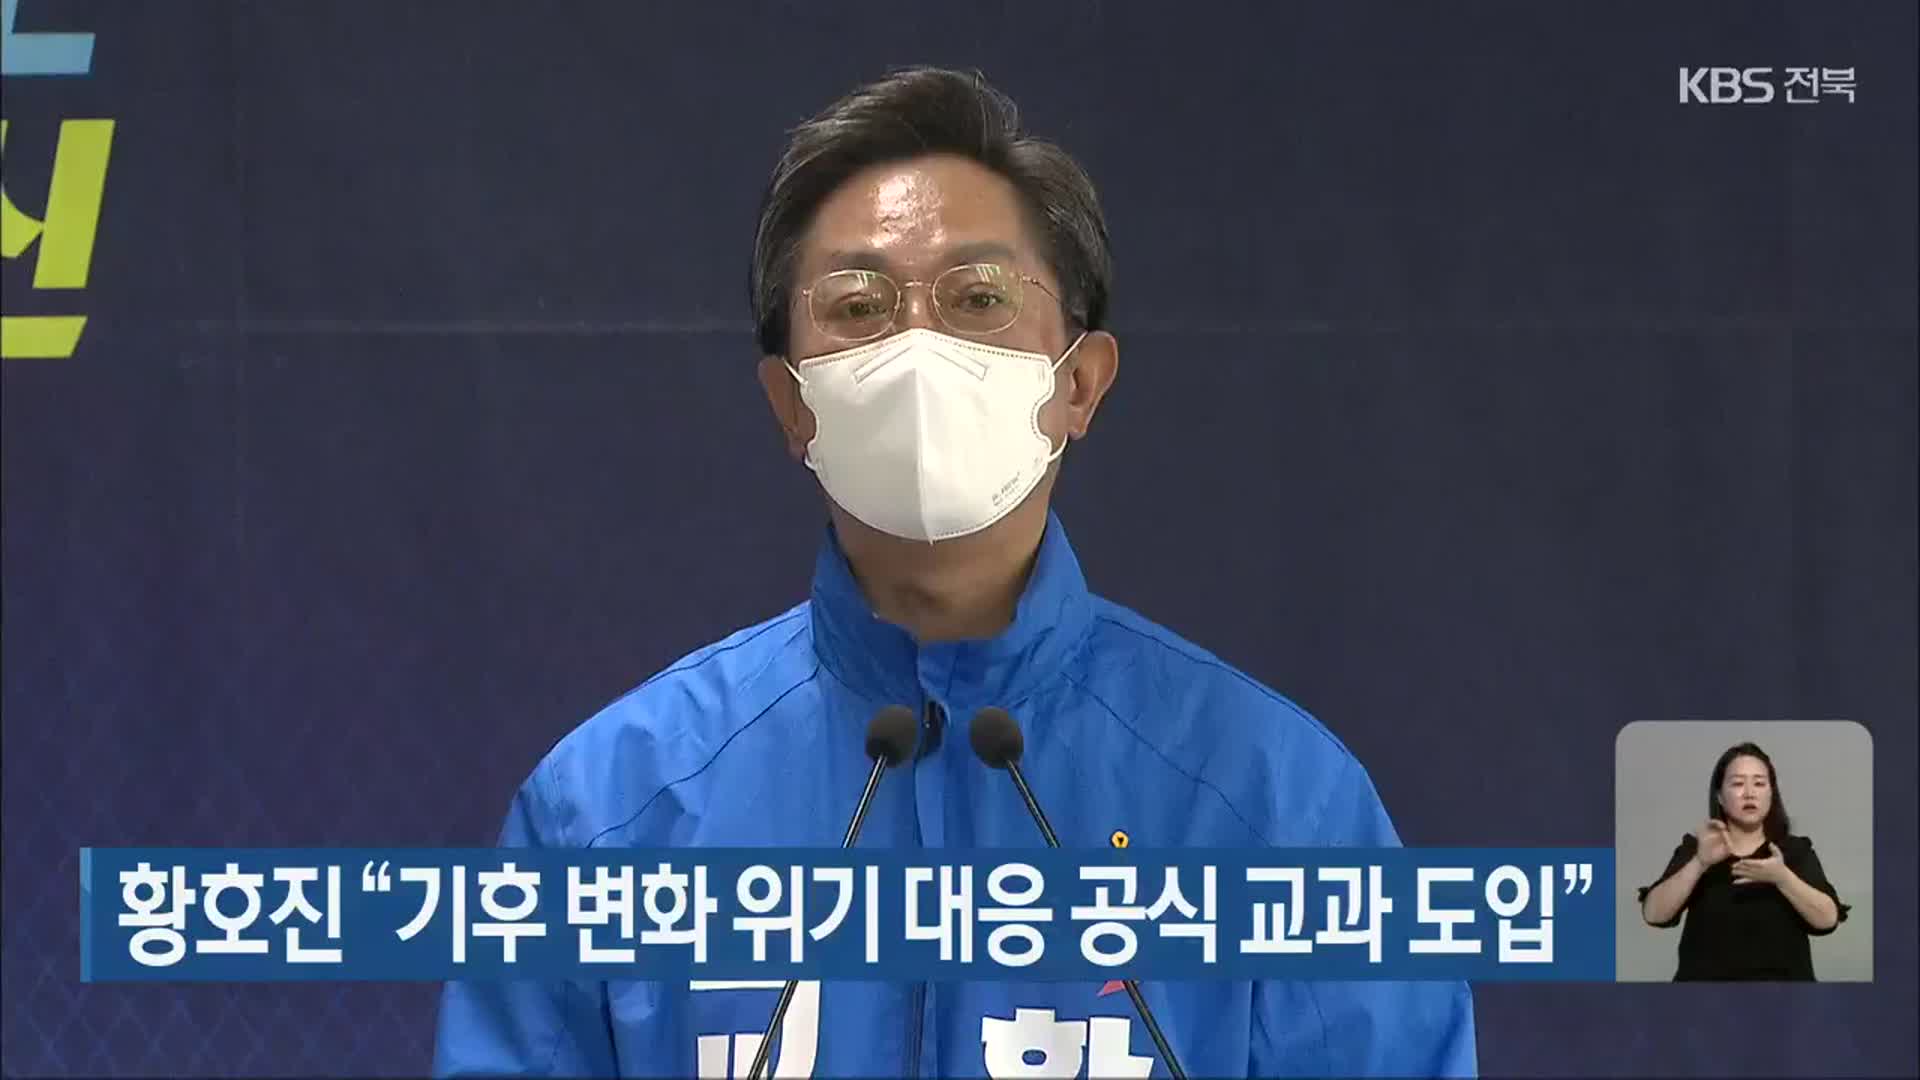 황호진 “기후 변화 위기 대응 공식 교과 도입”